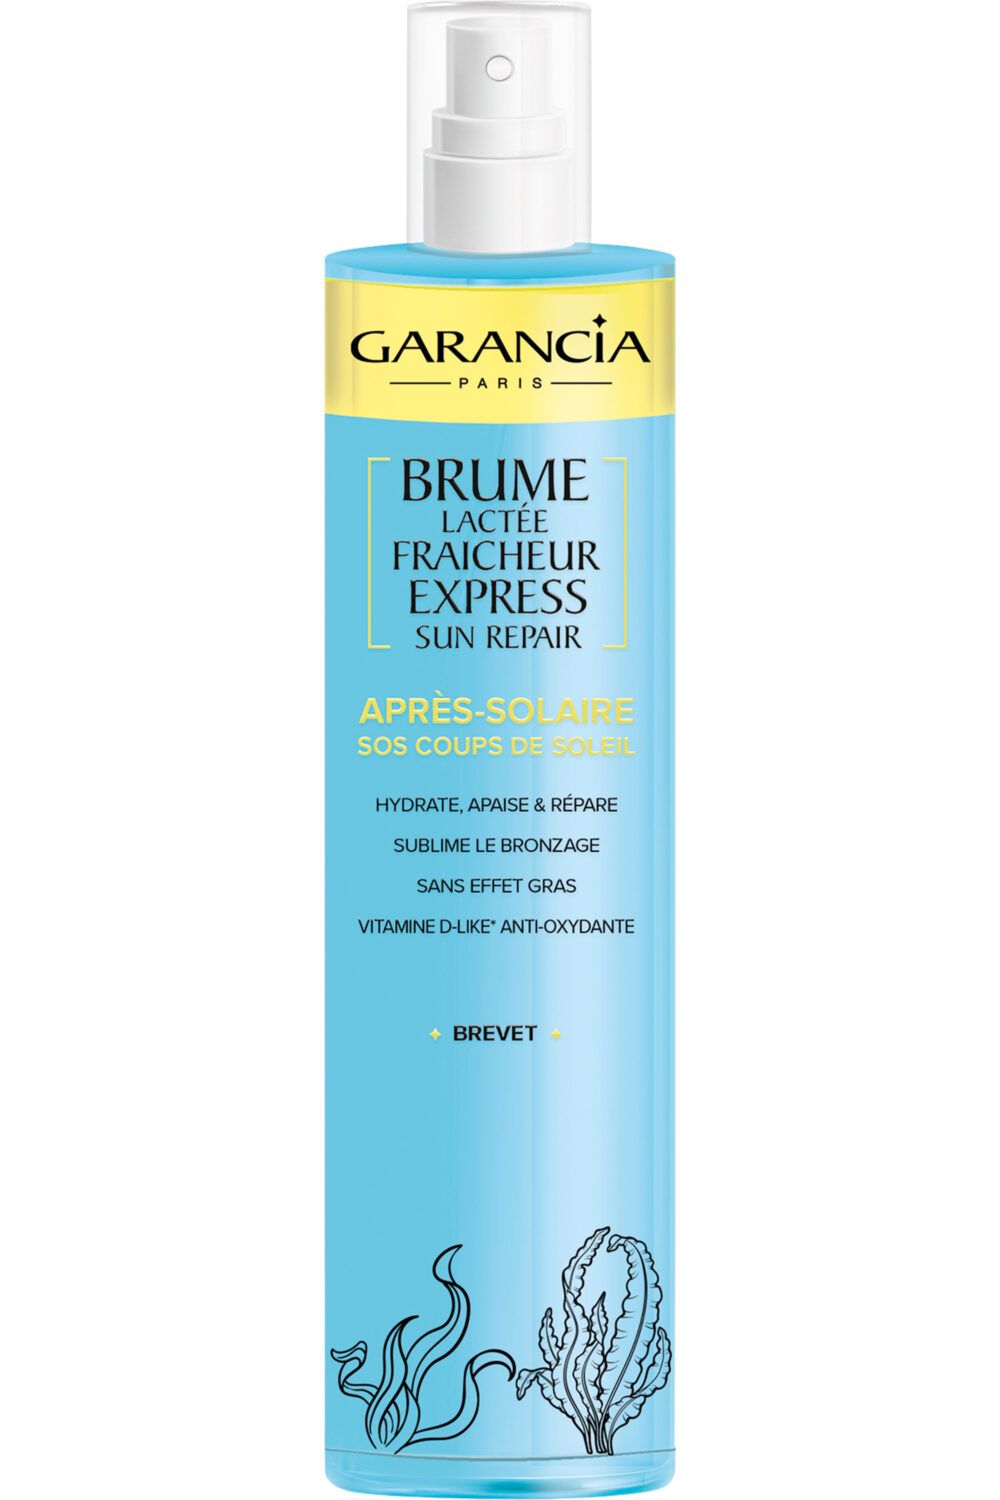 Garancia - Brume lactée fraicheur express après-solaire